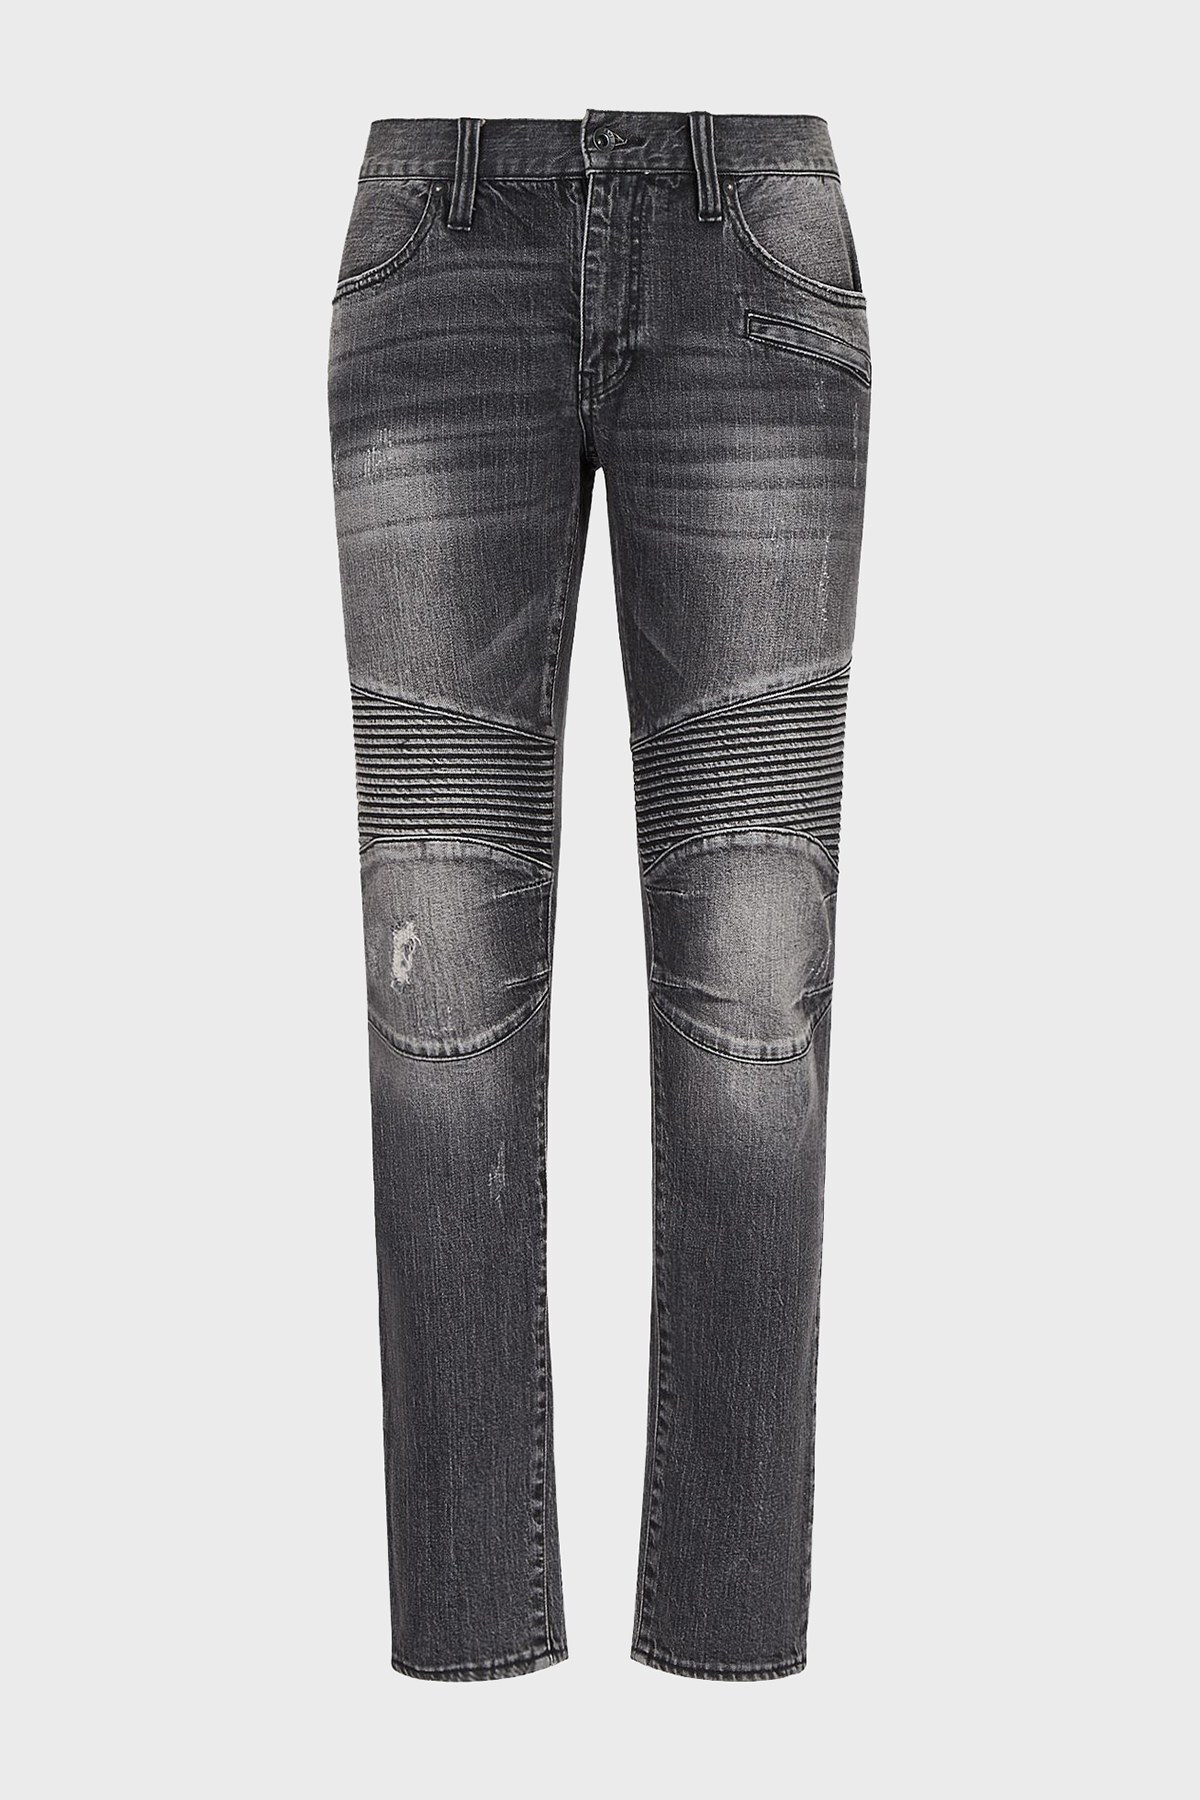 Armani Exchange J27 Streç Pamuklu Normal Bel Skinny Fit Jeans Erkek Kot Pantolon 3LZJ27 Z5KQZ 0903 GRİ